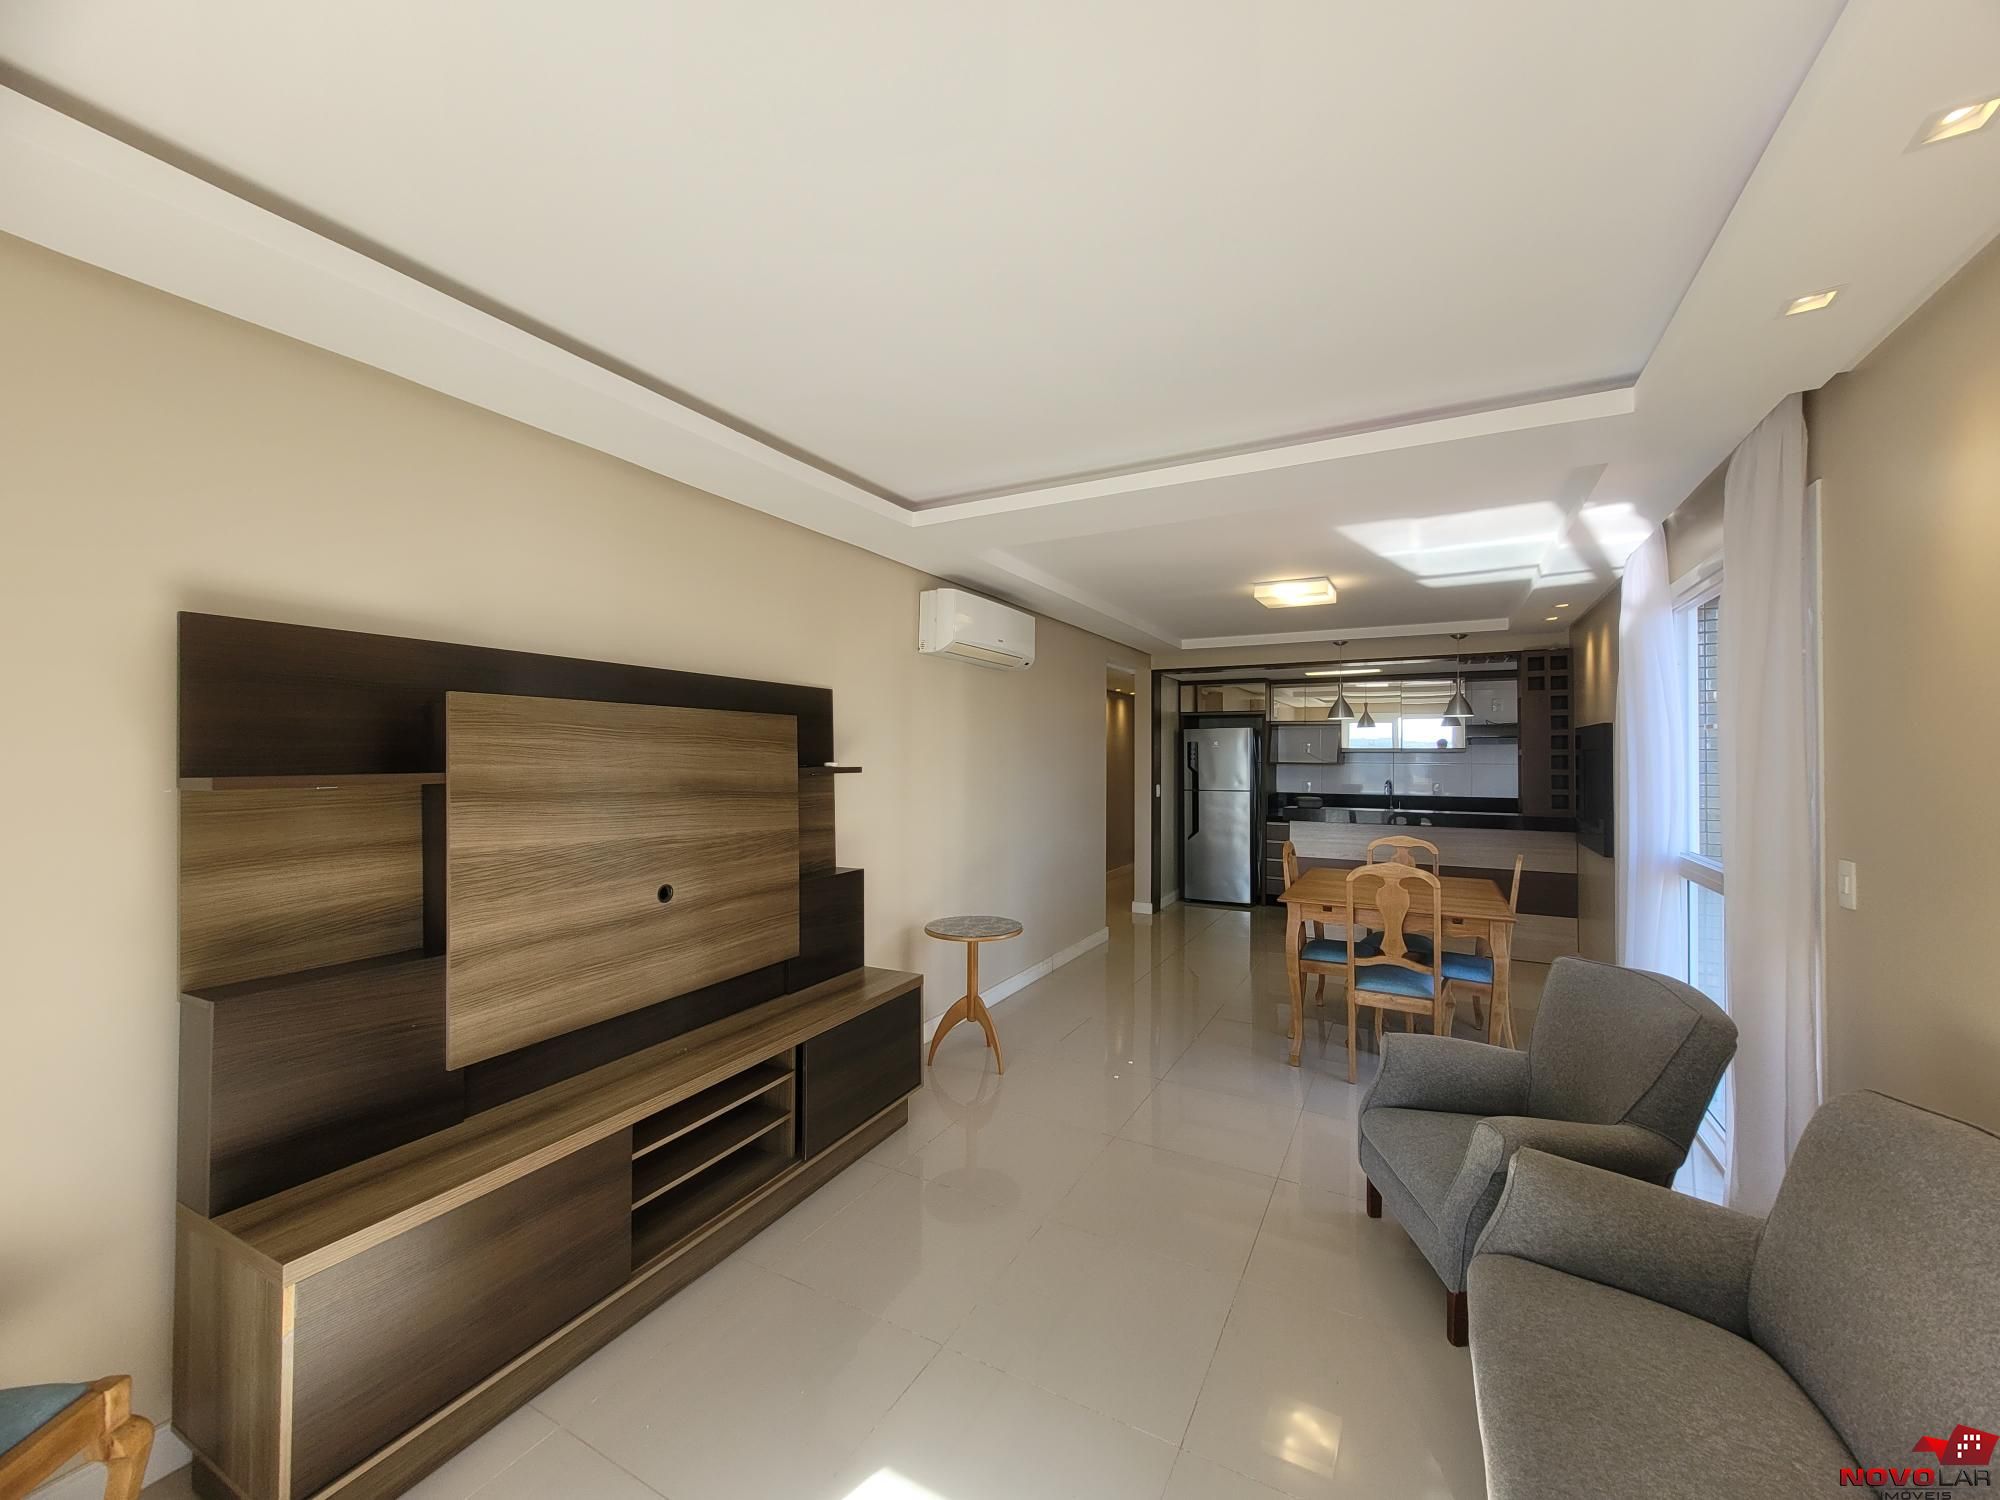 Apartamento com 2 dormitórios em Torres, no bairro Predial à venda